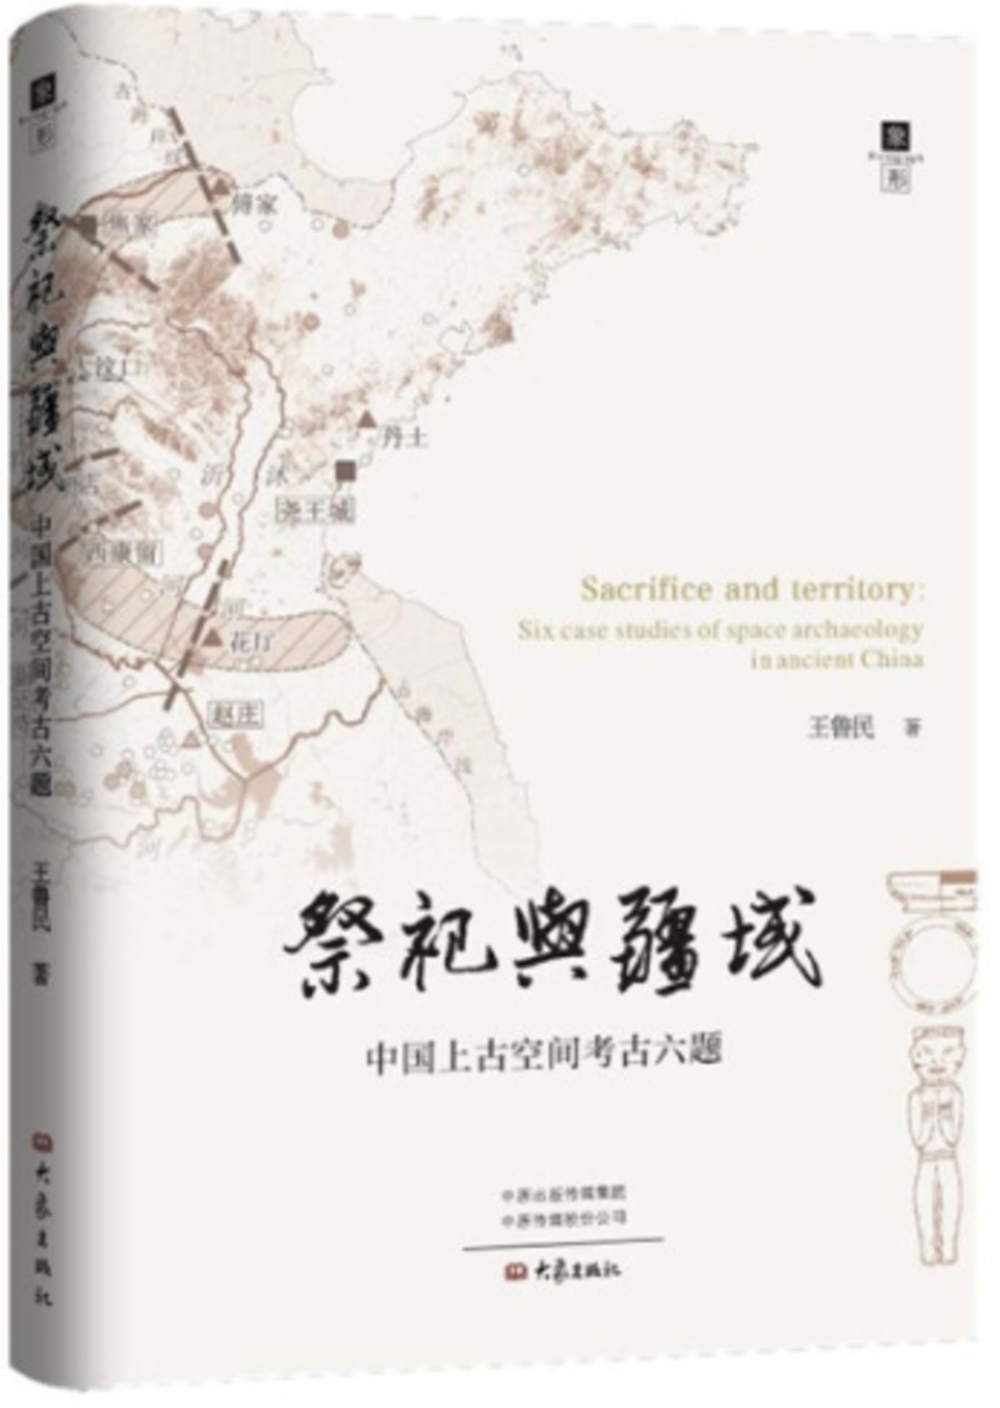 祭祀與疆域：中國上古空間考古六題